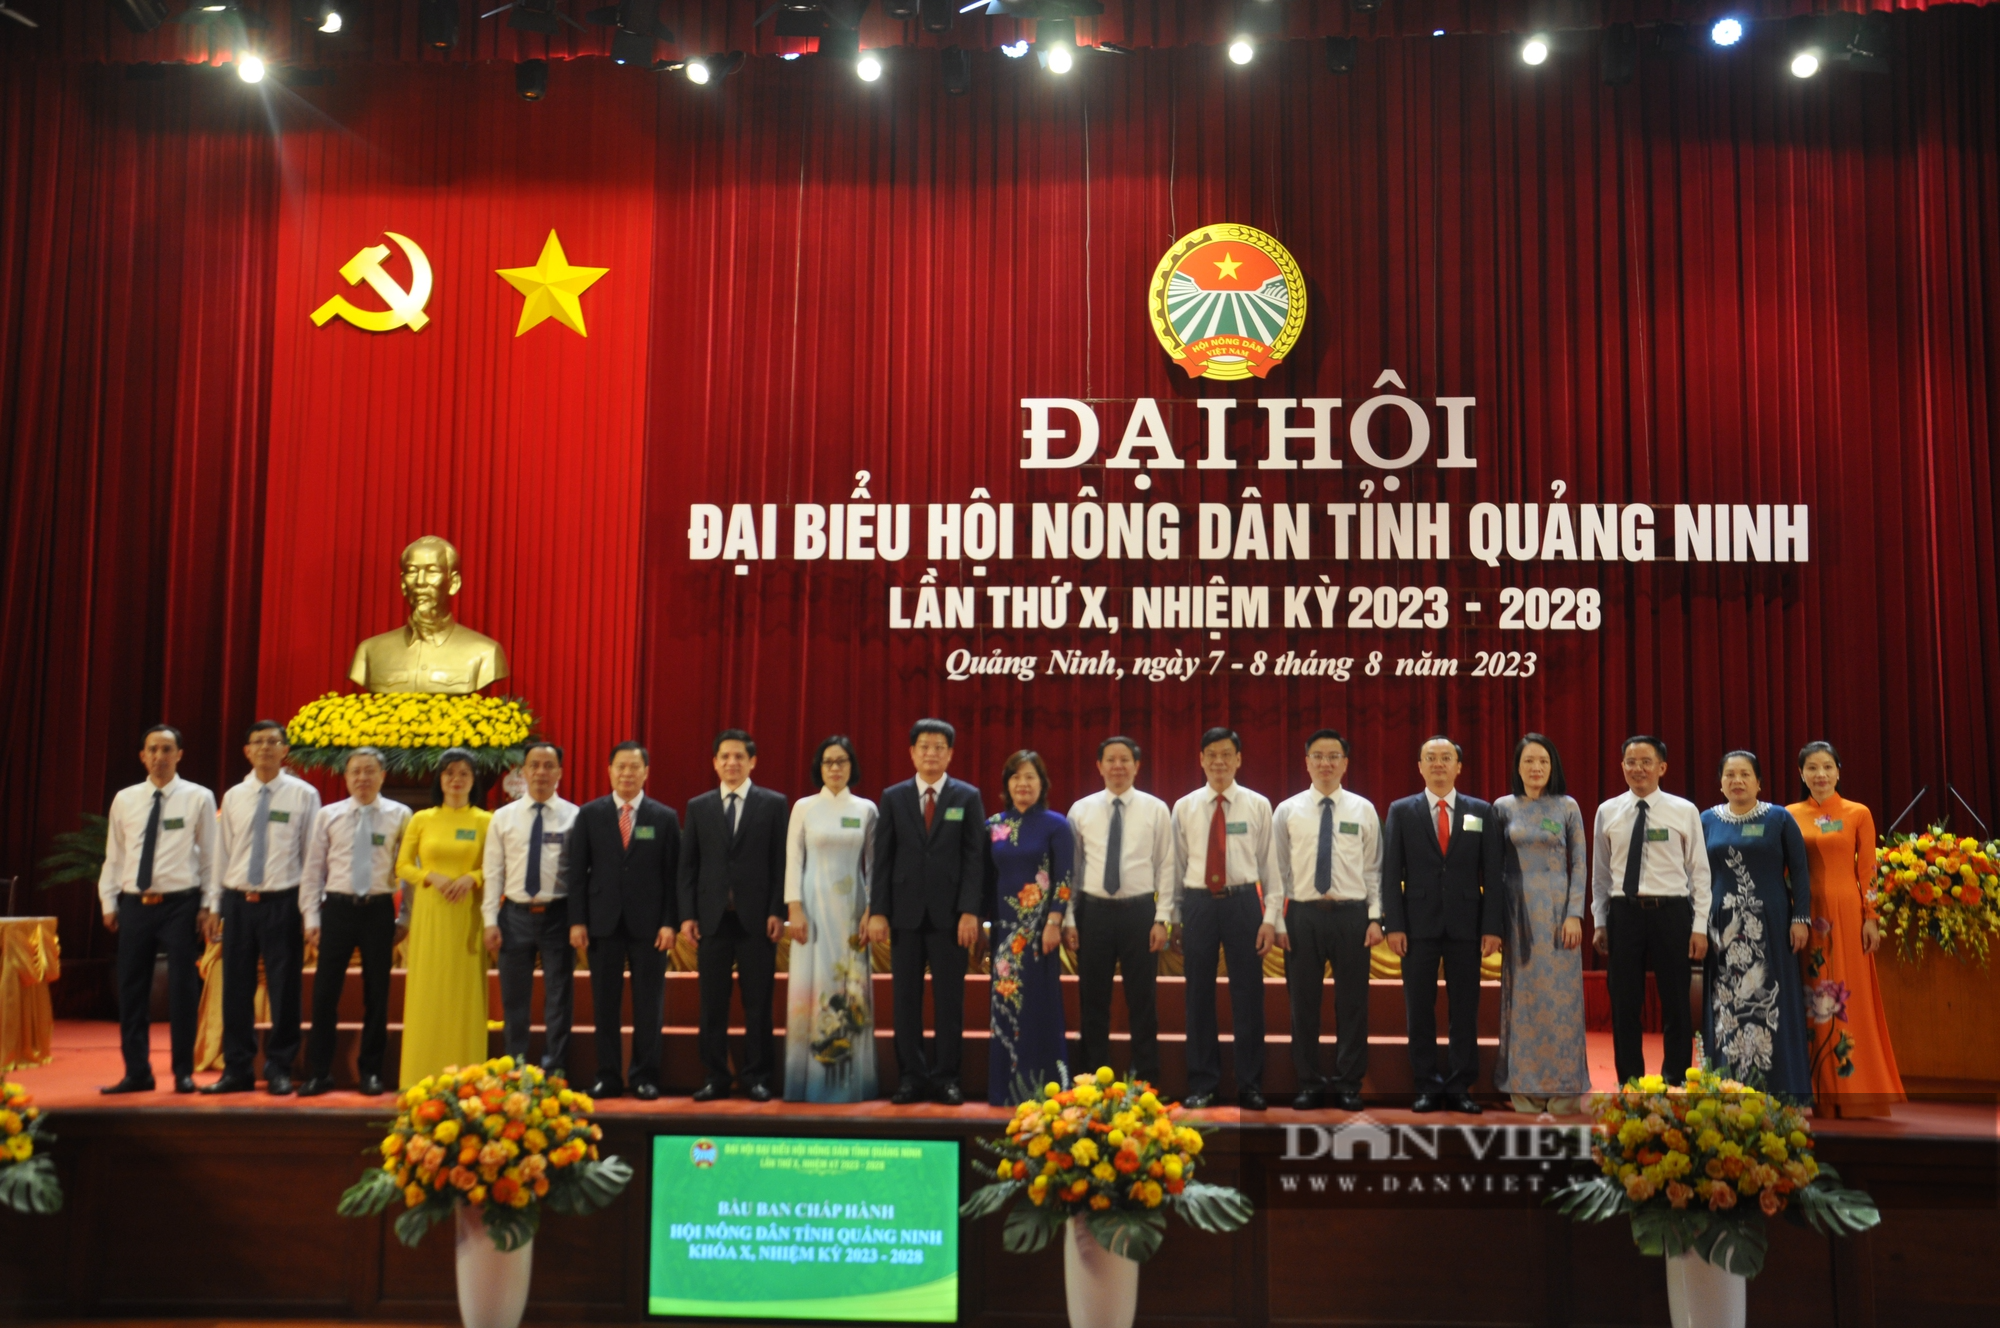 Phó Chủ tịch Thường trực Hội NDVN Phạm Tiến Nam gợi mở 6 vấn đề tại Đại hội Hội Nông dân tỉnh Quảng Ninh - Ảnh 2.